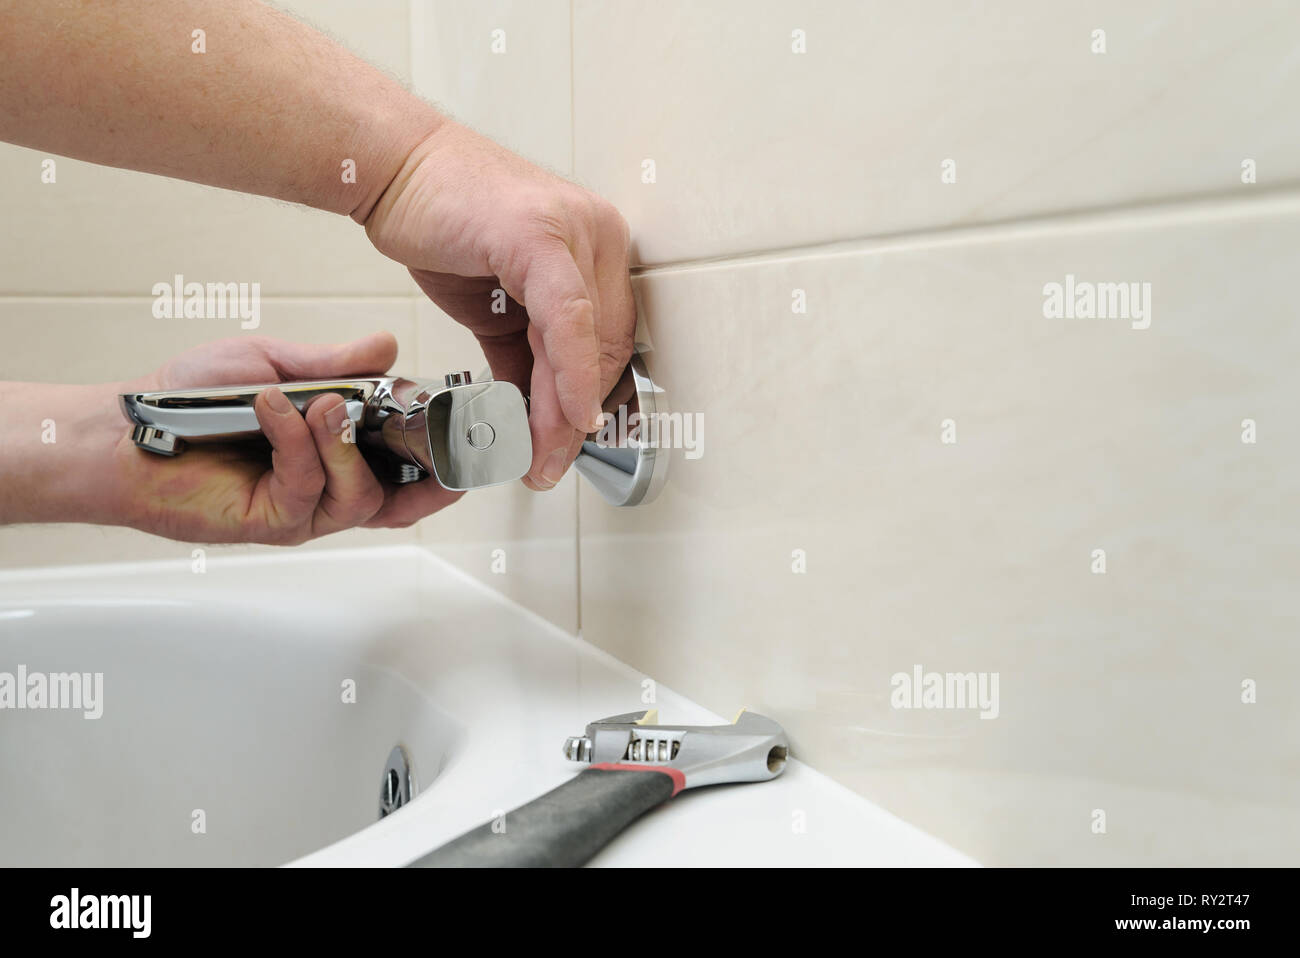 L'installation de robinet avec thermostat. L'homme a les mains robinet baignoire fixation en place. Banque D'Images